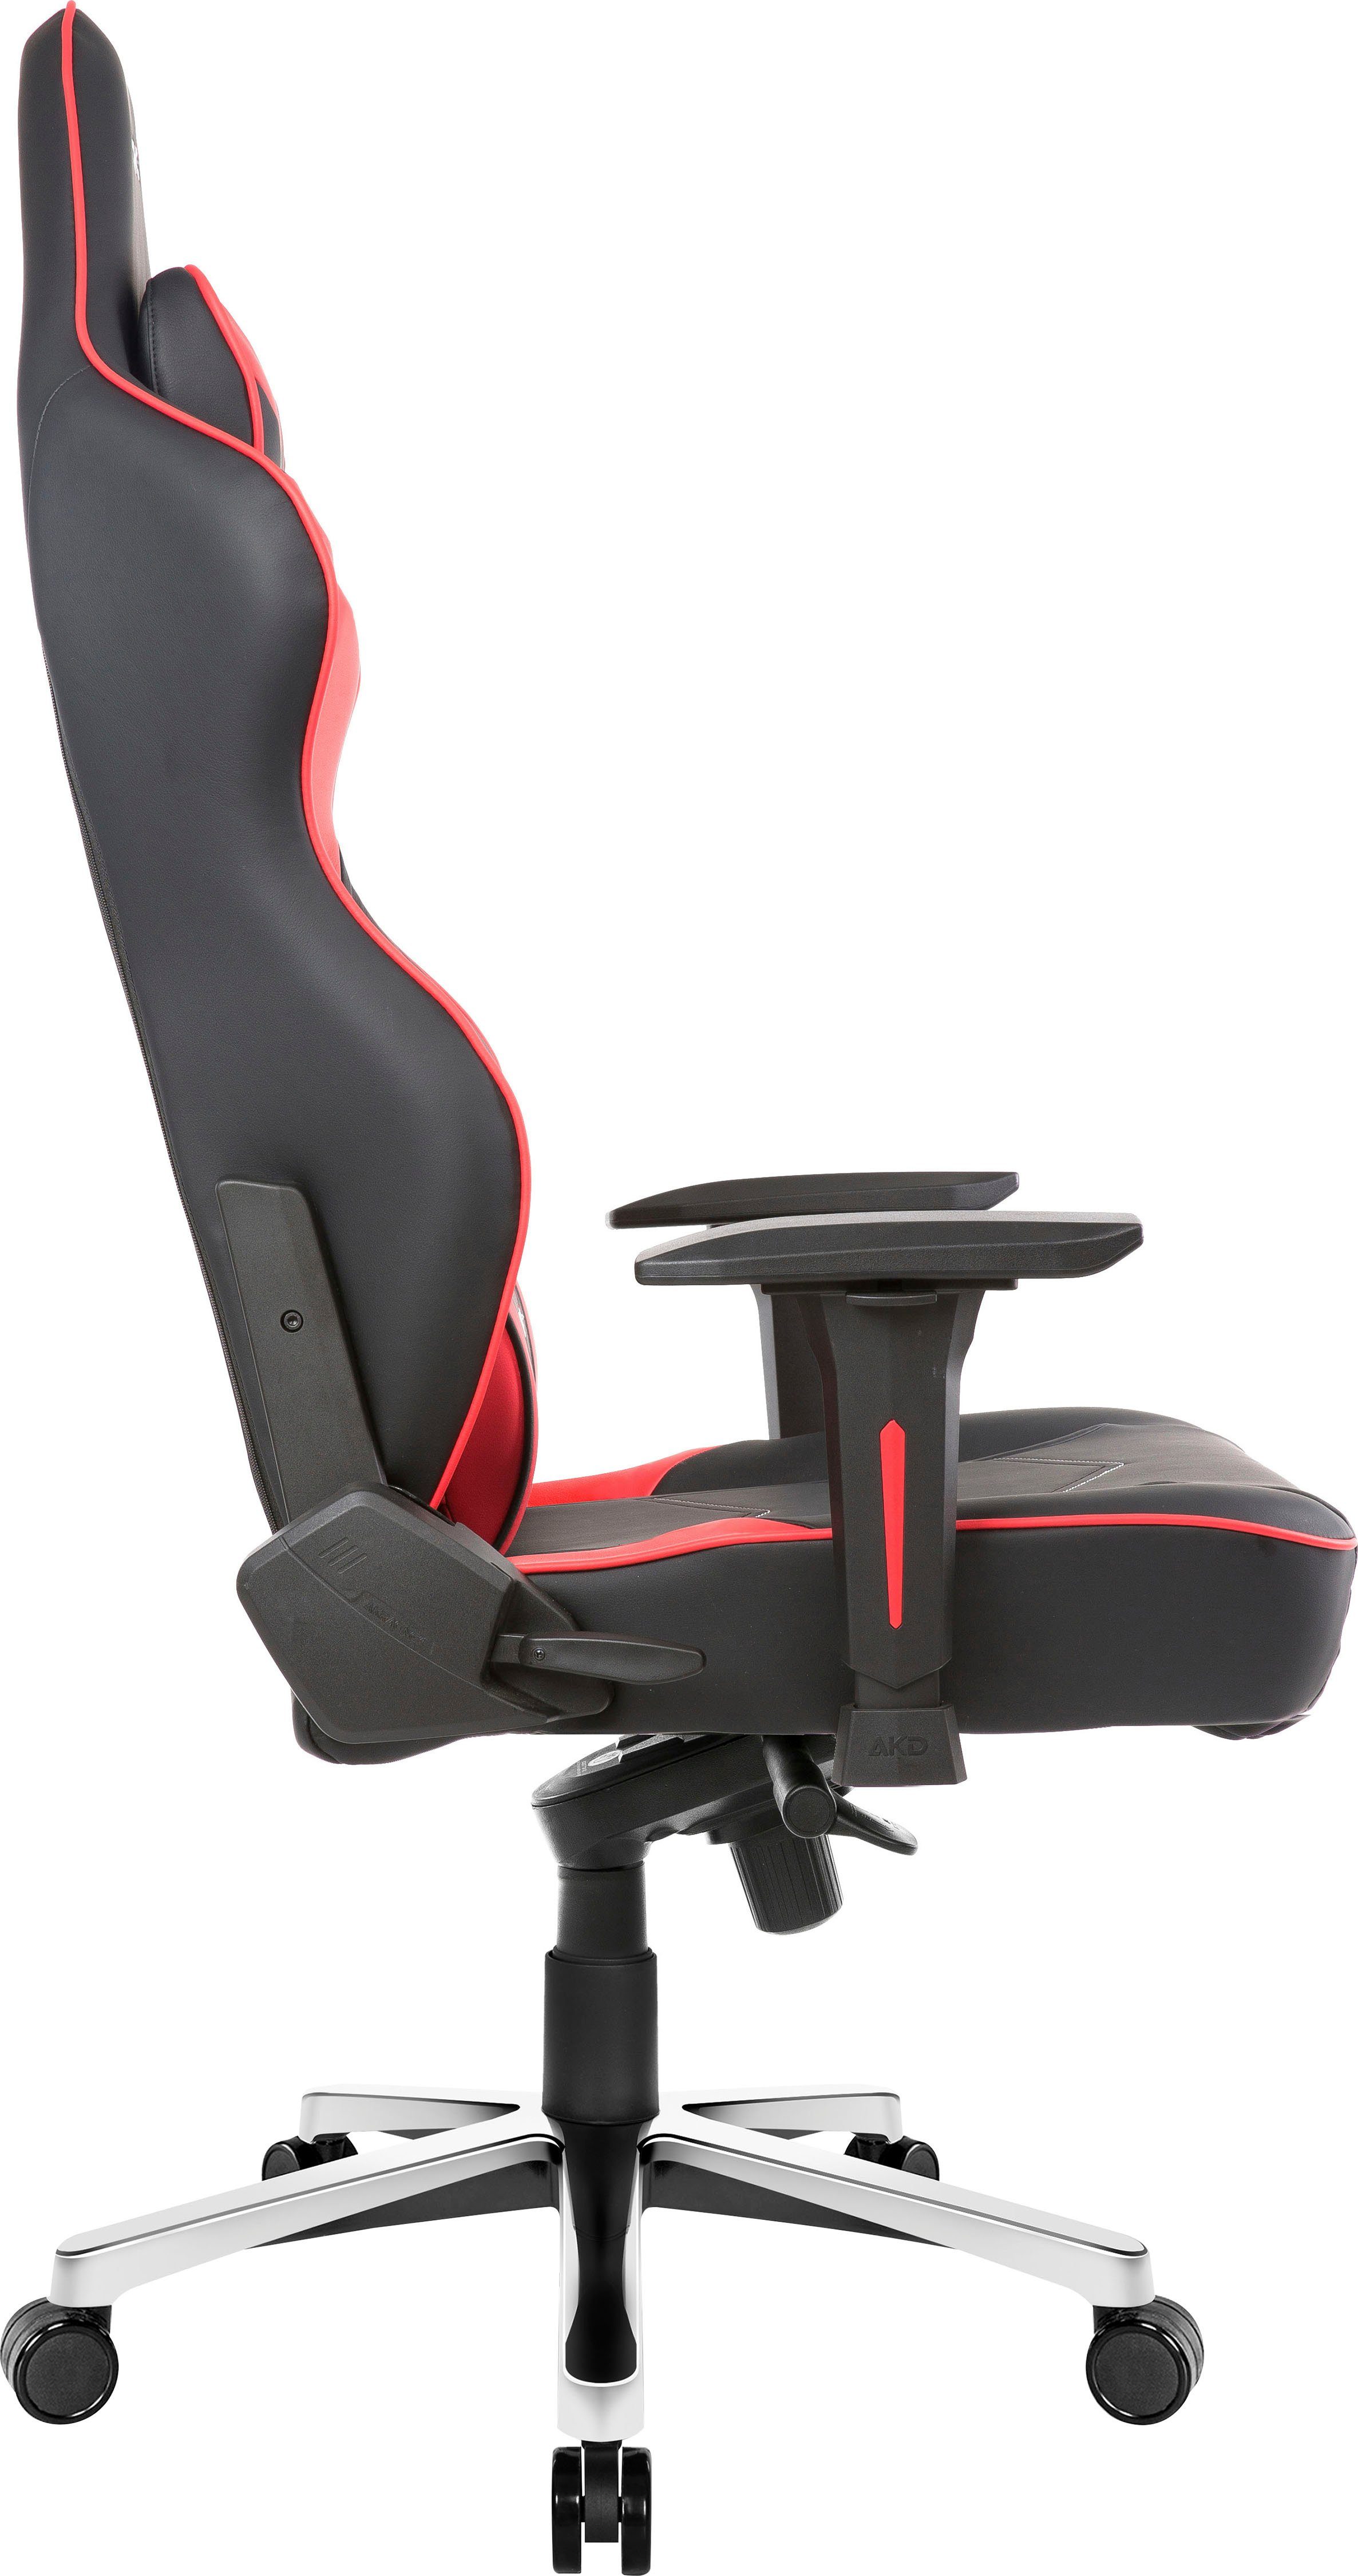 Max" große ergonomisch, rot Personen Master "AKRACING Gaming-Stuhl und schwere für Bürostuhl AKRacing Kunstleder, hochwertiges höhenverstellbar